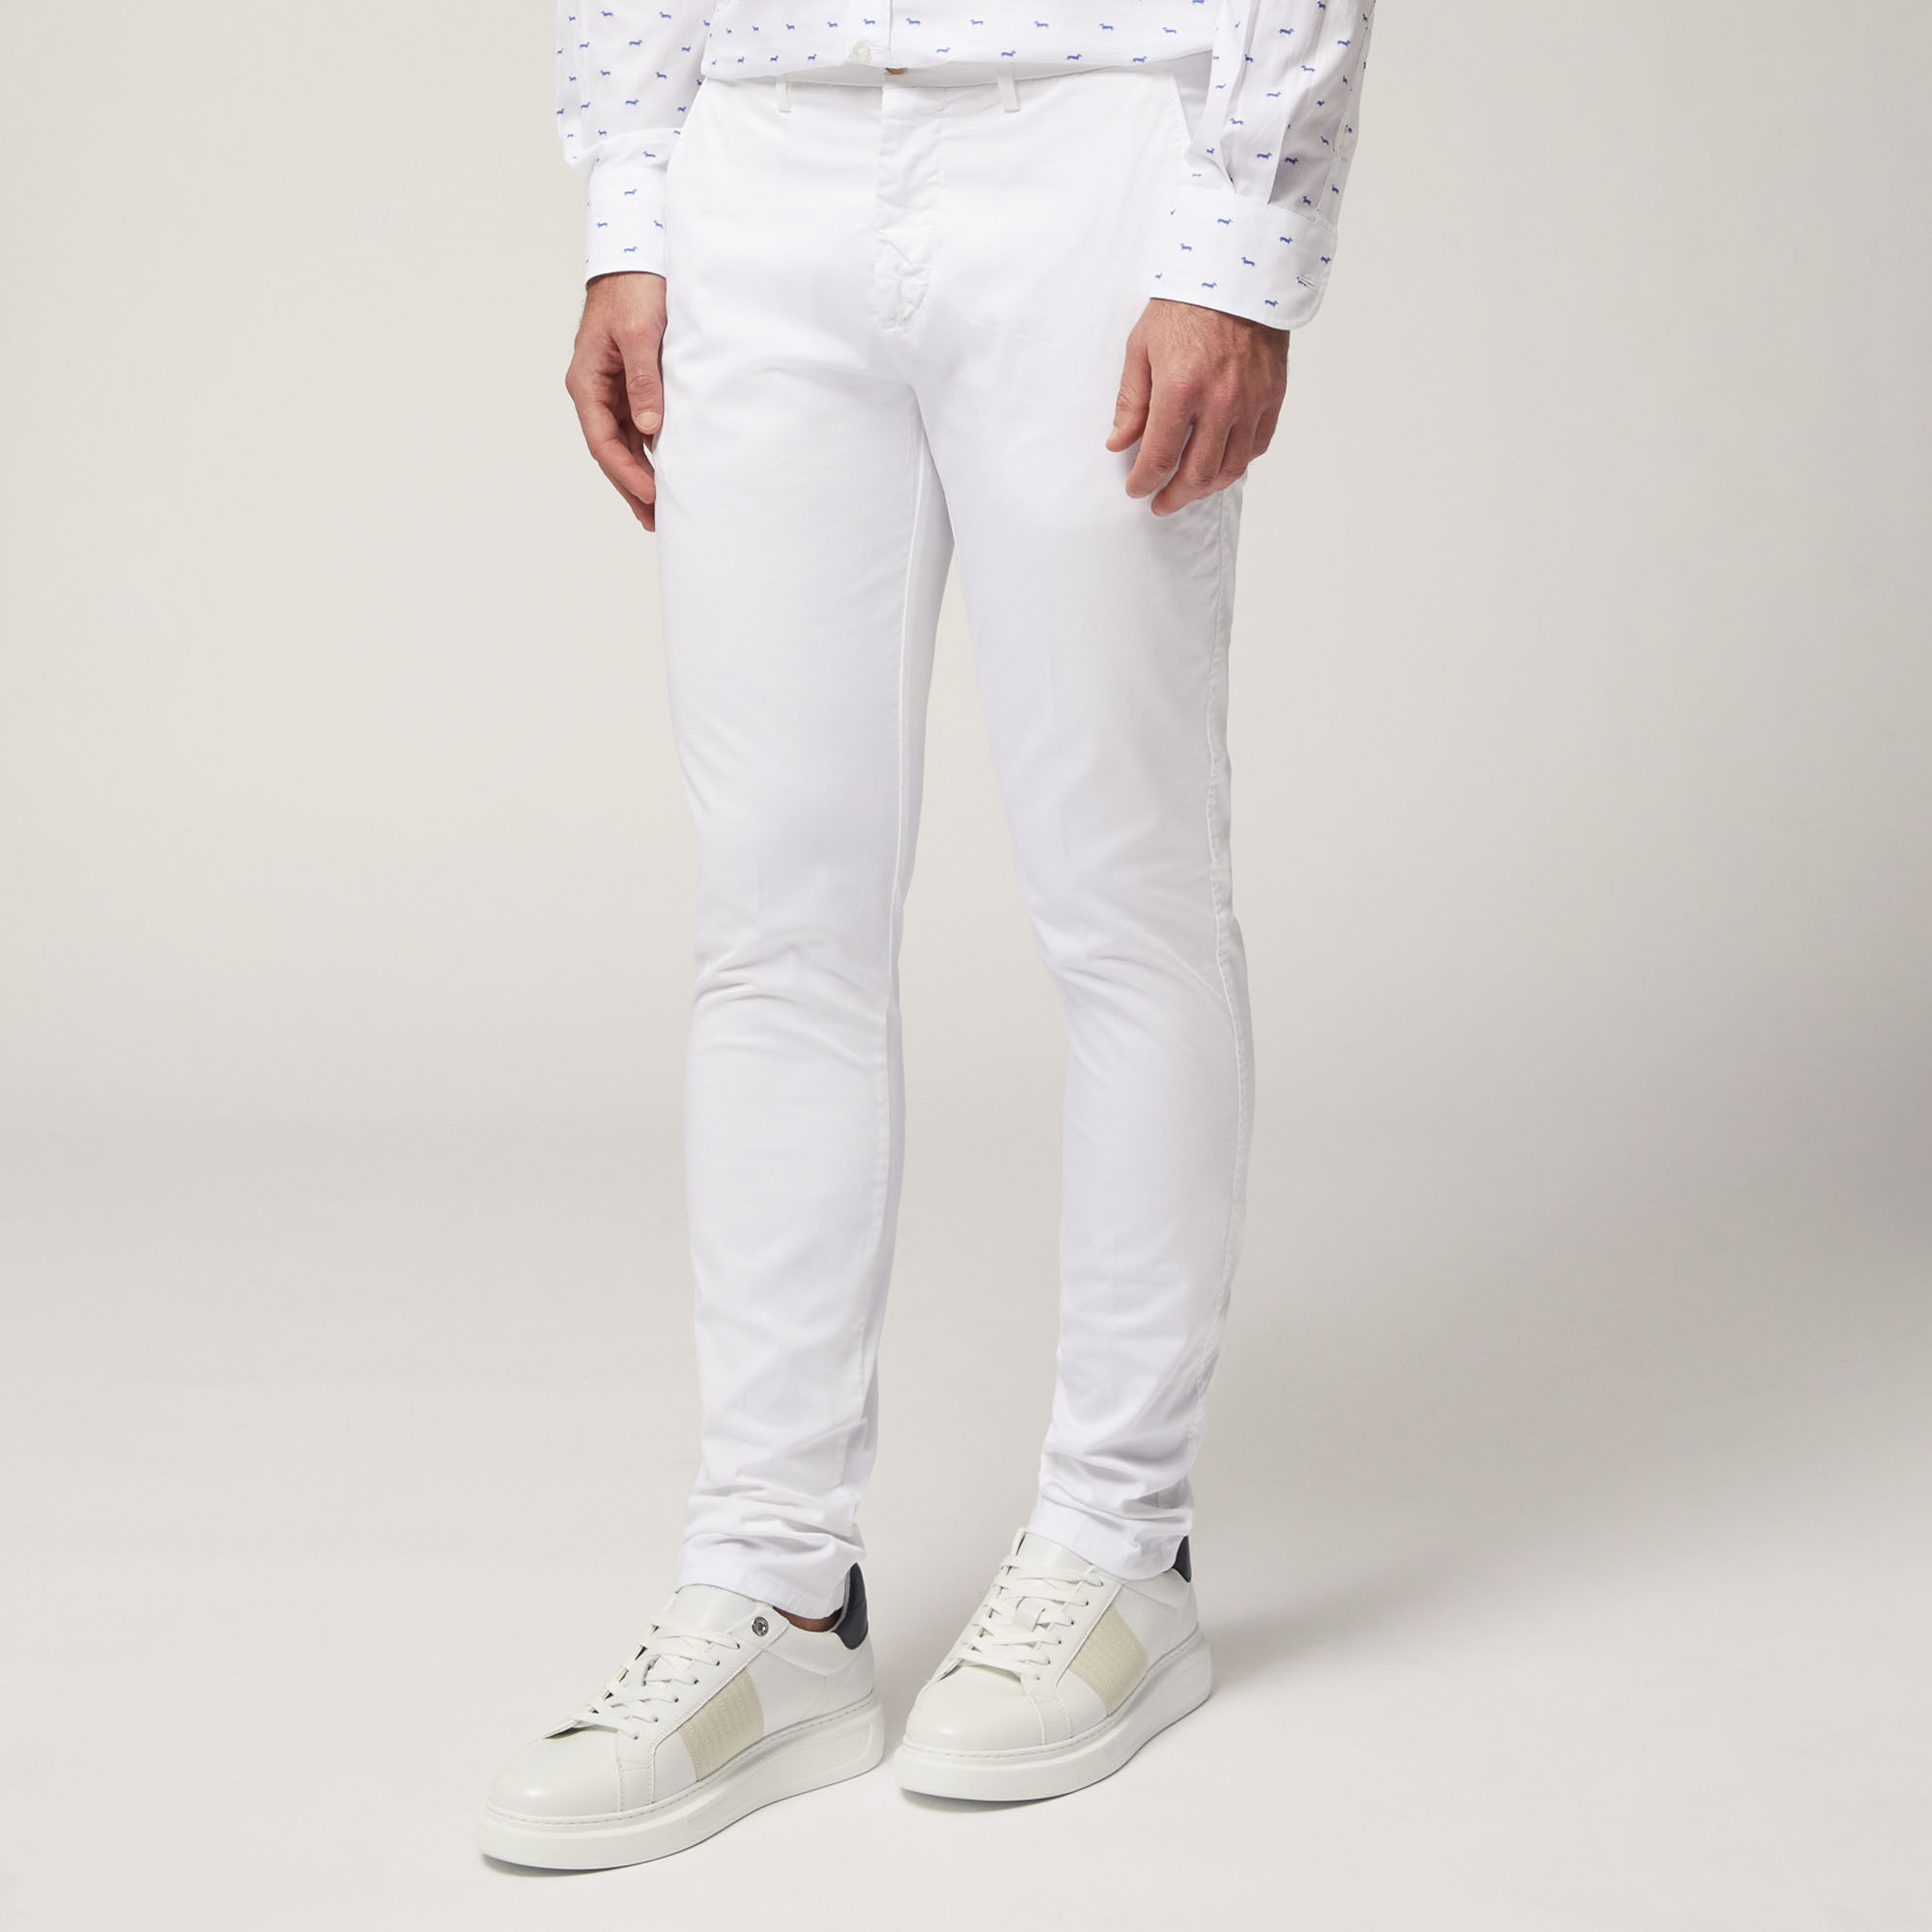 Pantaloni Chino Narrow Fit, White, large